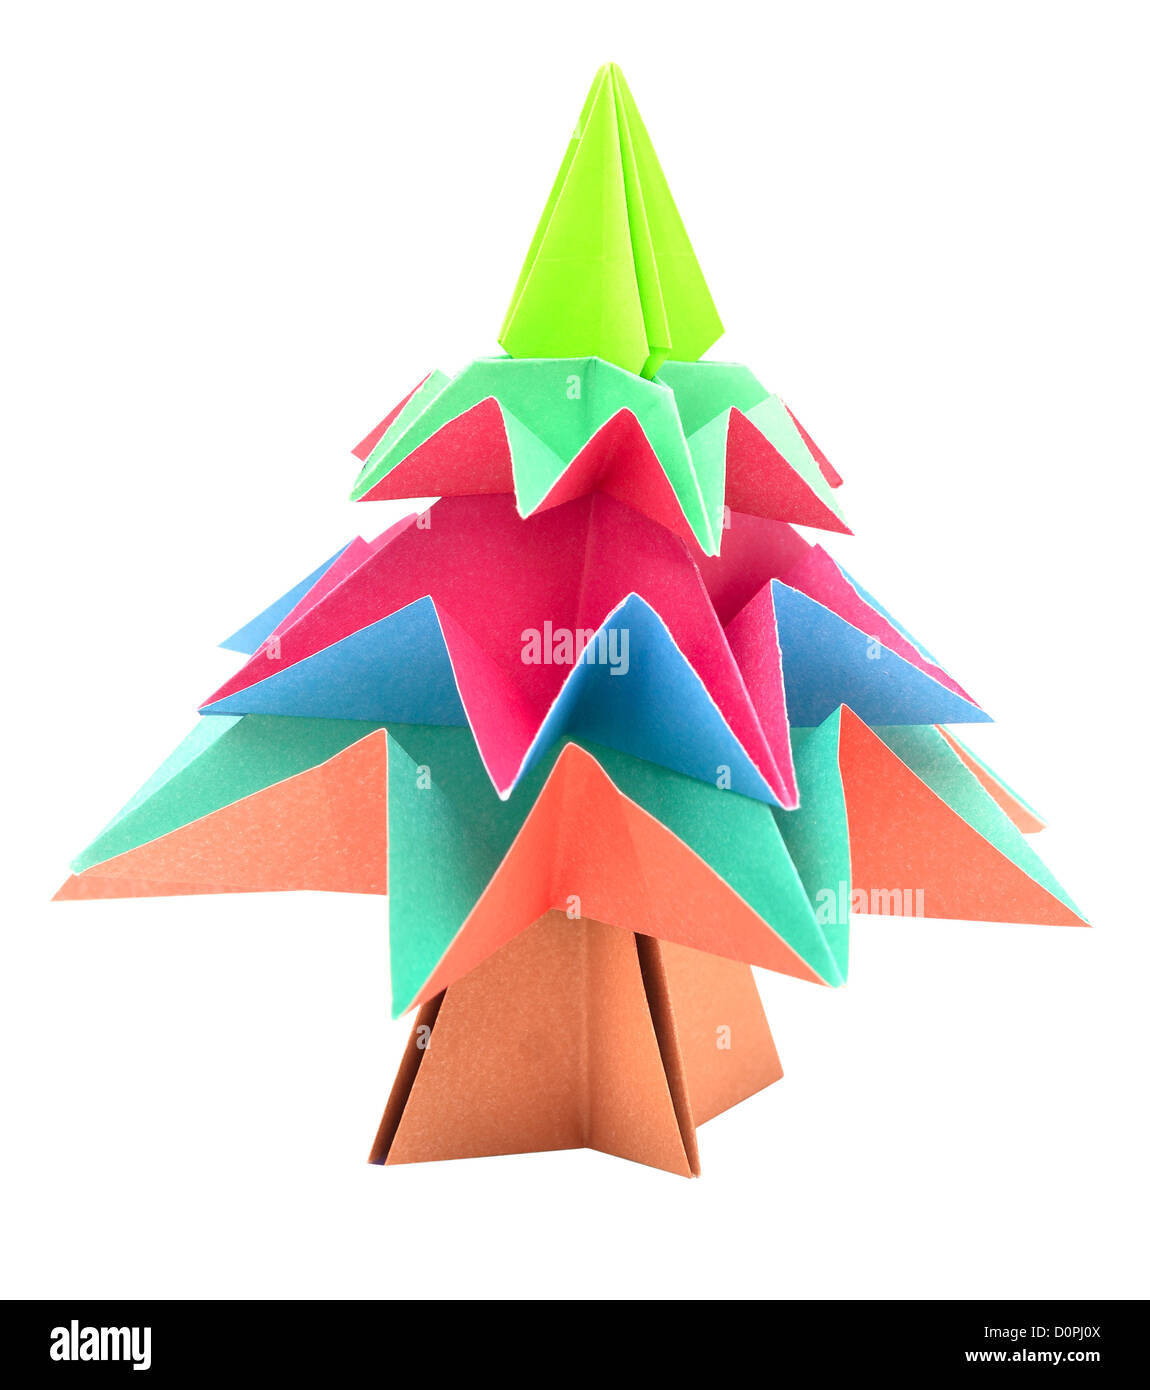 Albero Di Natale Di Carta Origami.Origami Albero Di Natale Su Sfondo Bianco Foto Stock Alamy